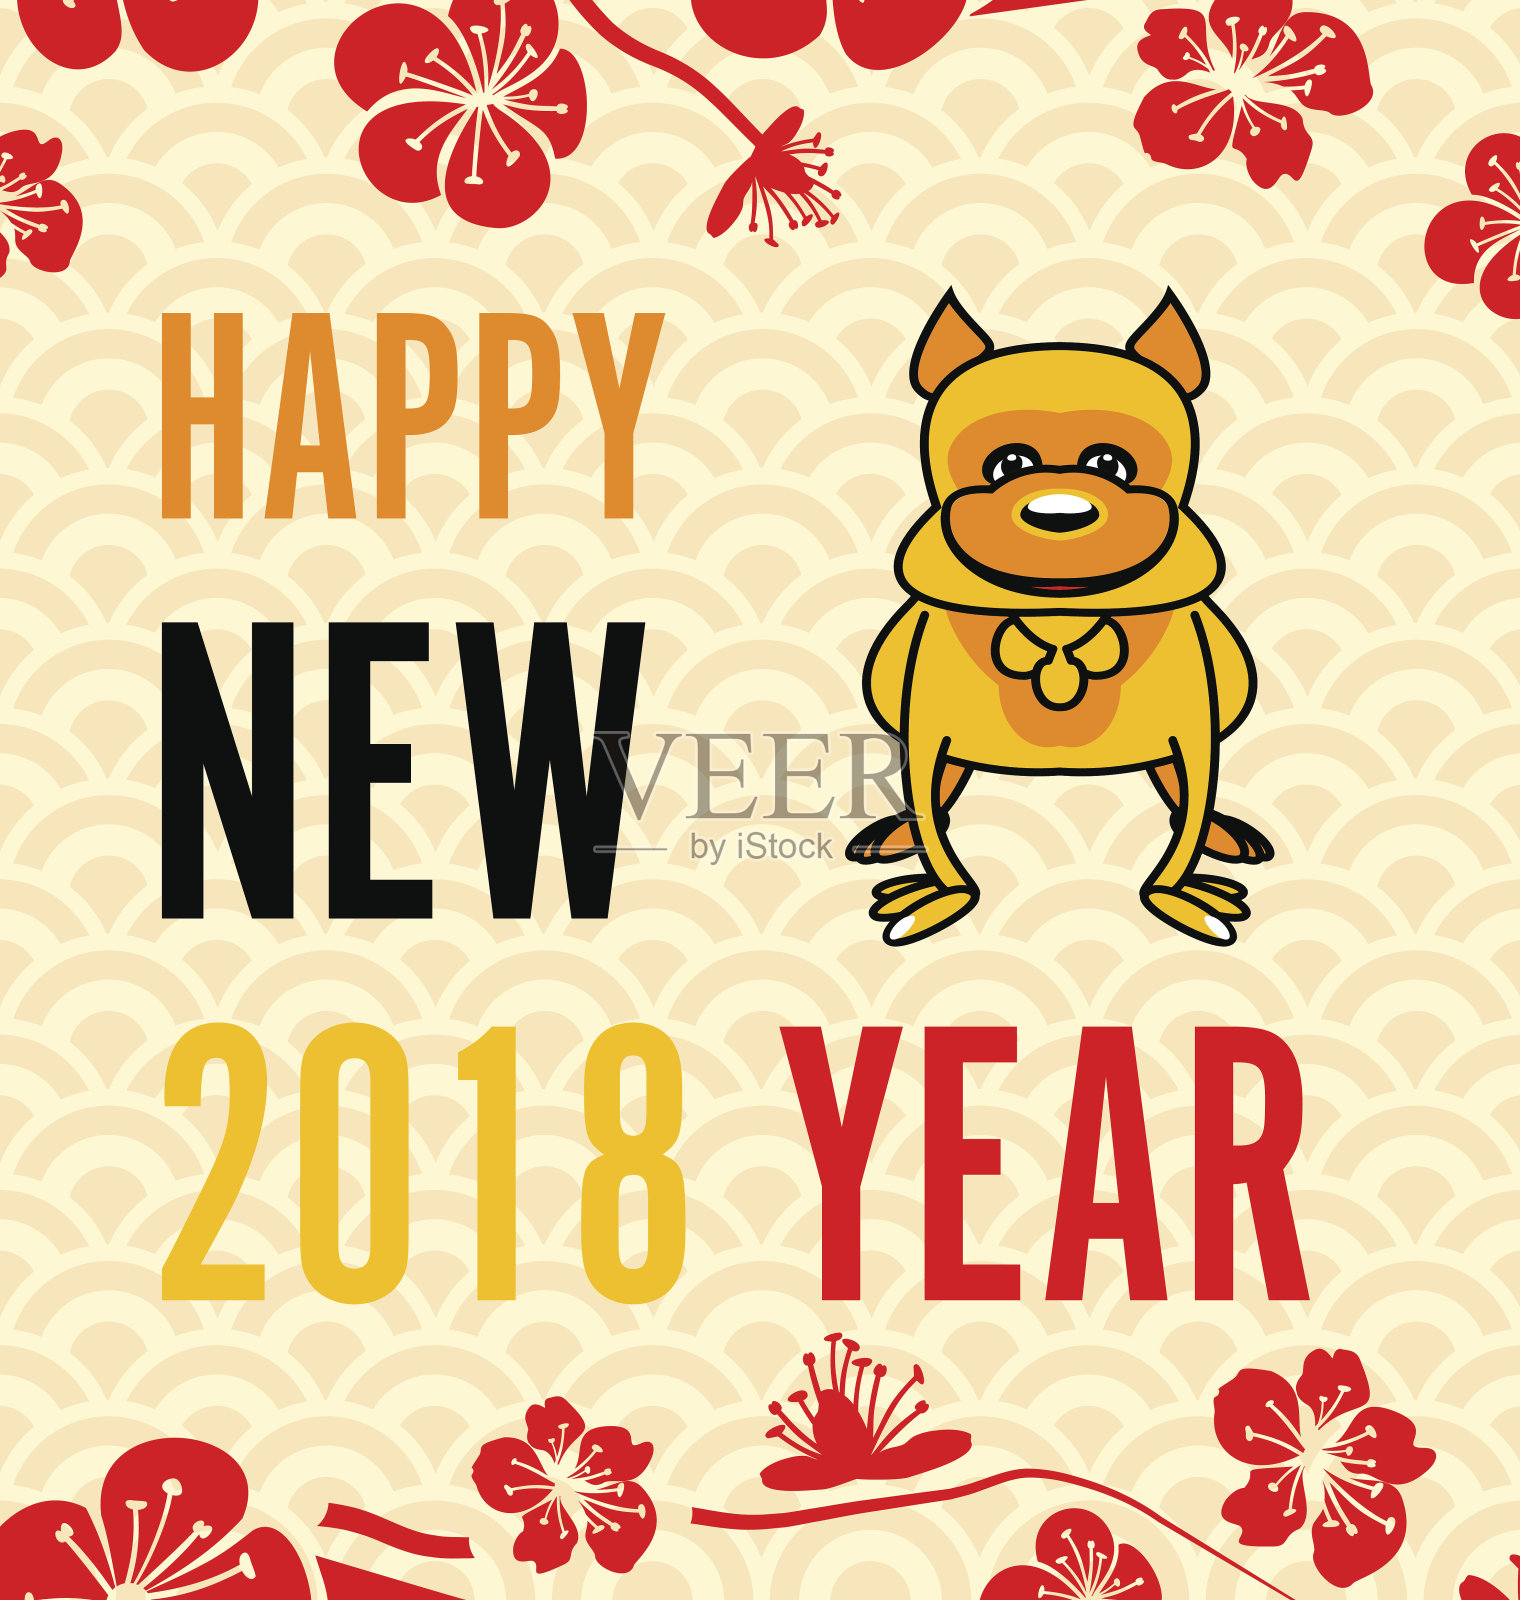 土狗庆祝2018年春节快乐卡片设计模板素材